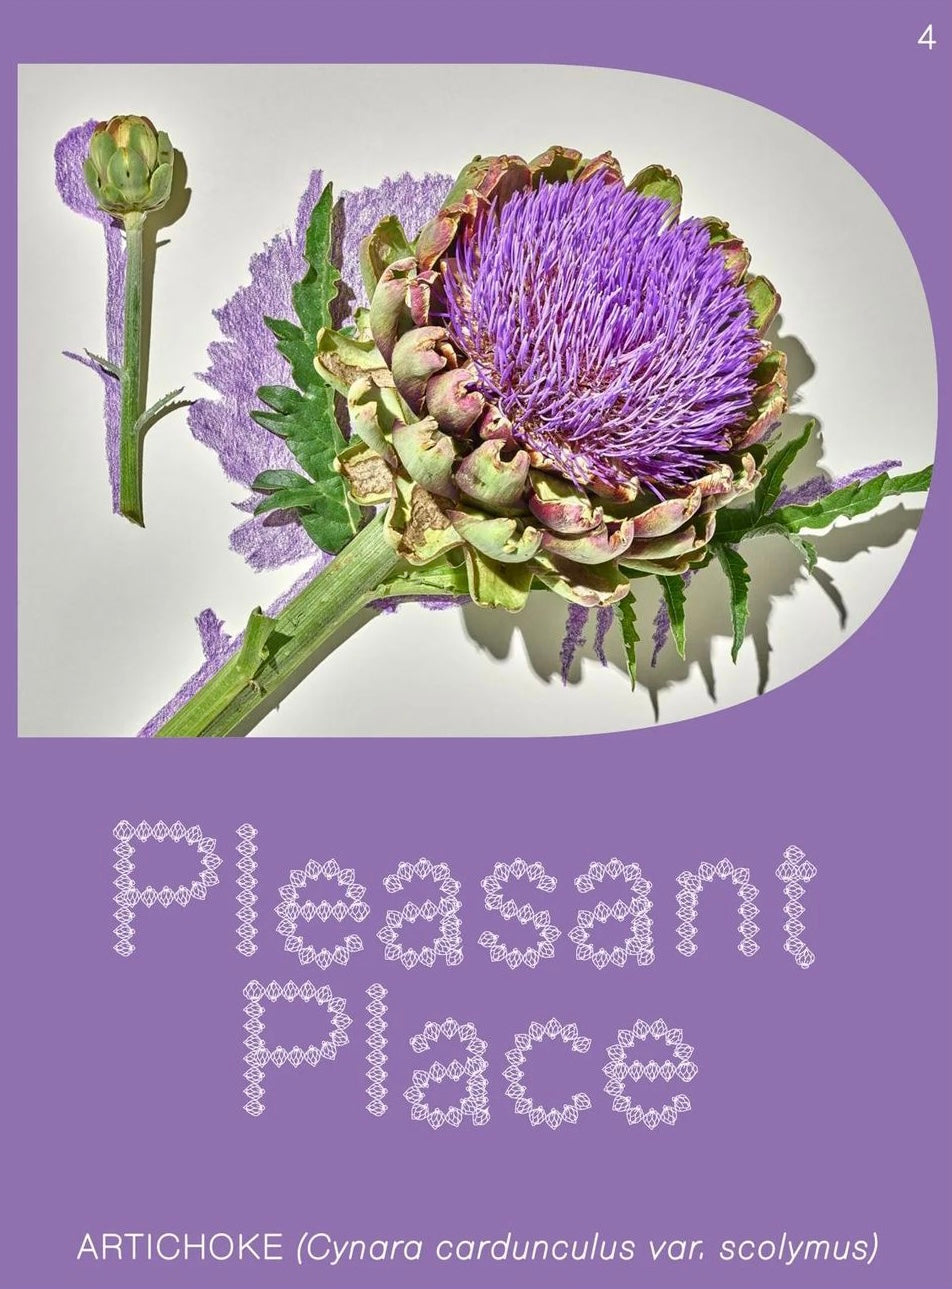 Pleasant Place #4: Artichokes